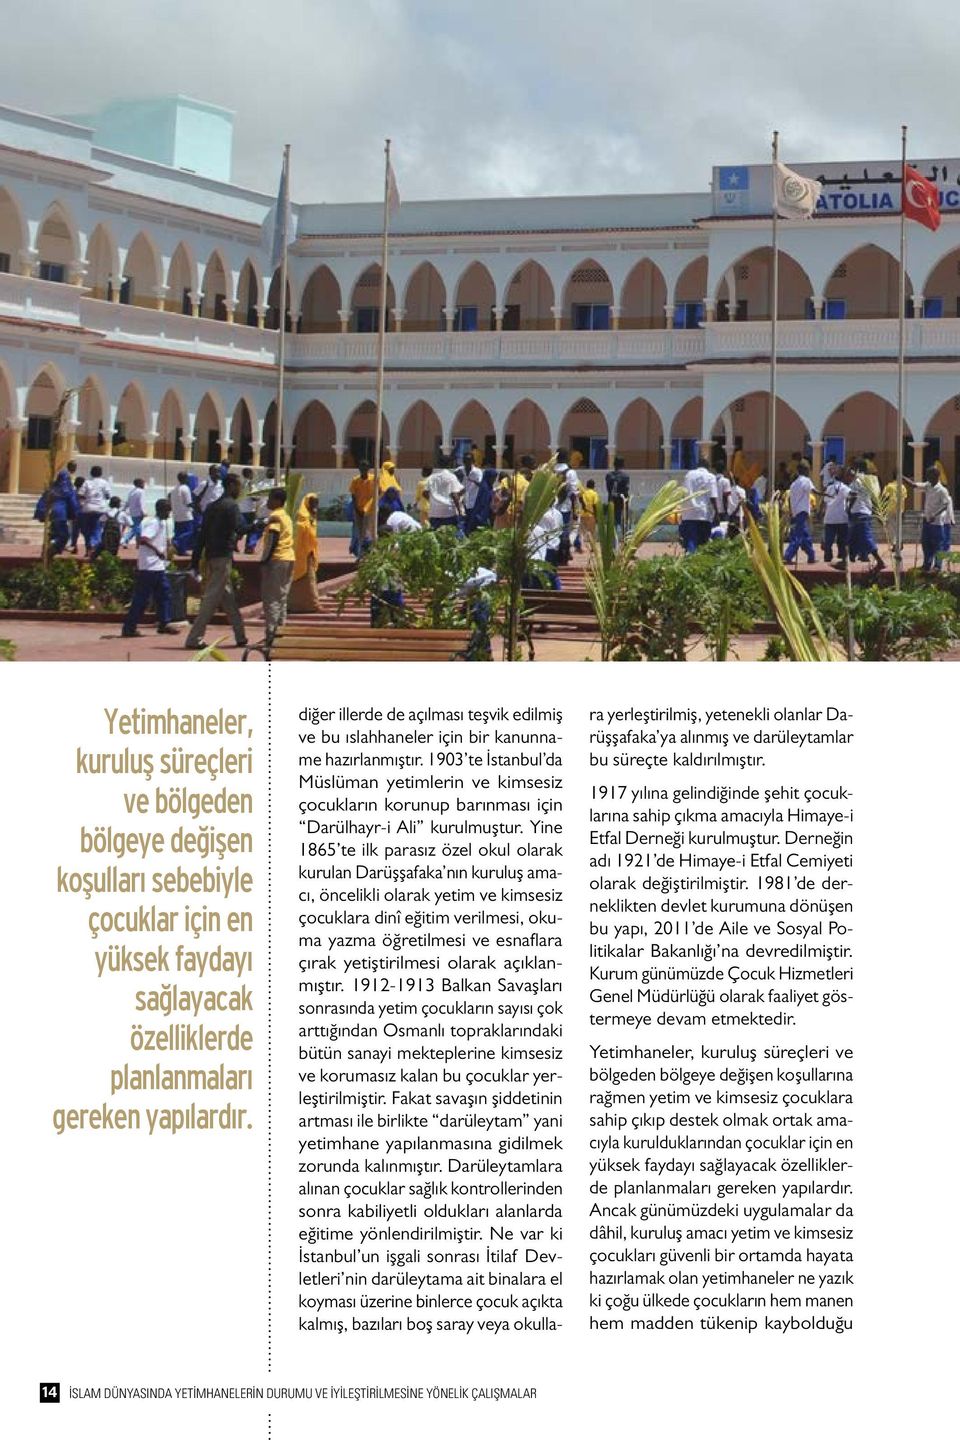 1903 te İstanbul da Müslüman yetimlerin ve kimsesiz çocukların korunup barınması için Darülhayr-i Ali kurulmuştur.